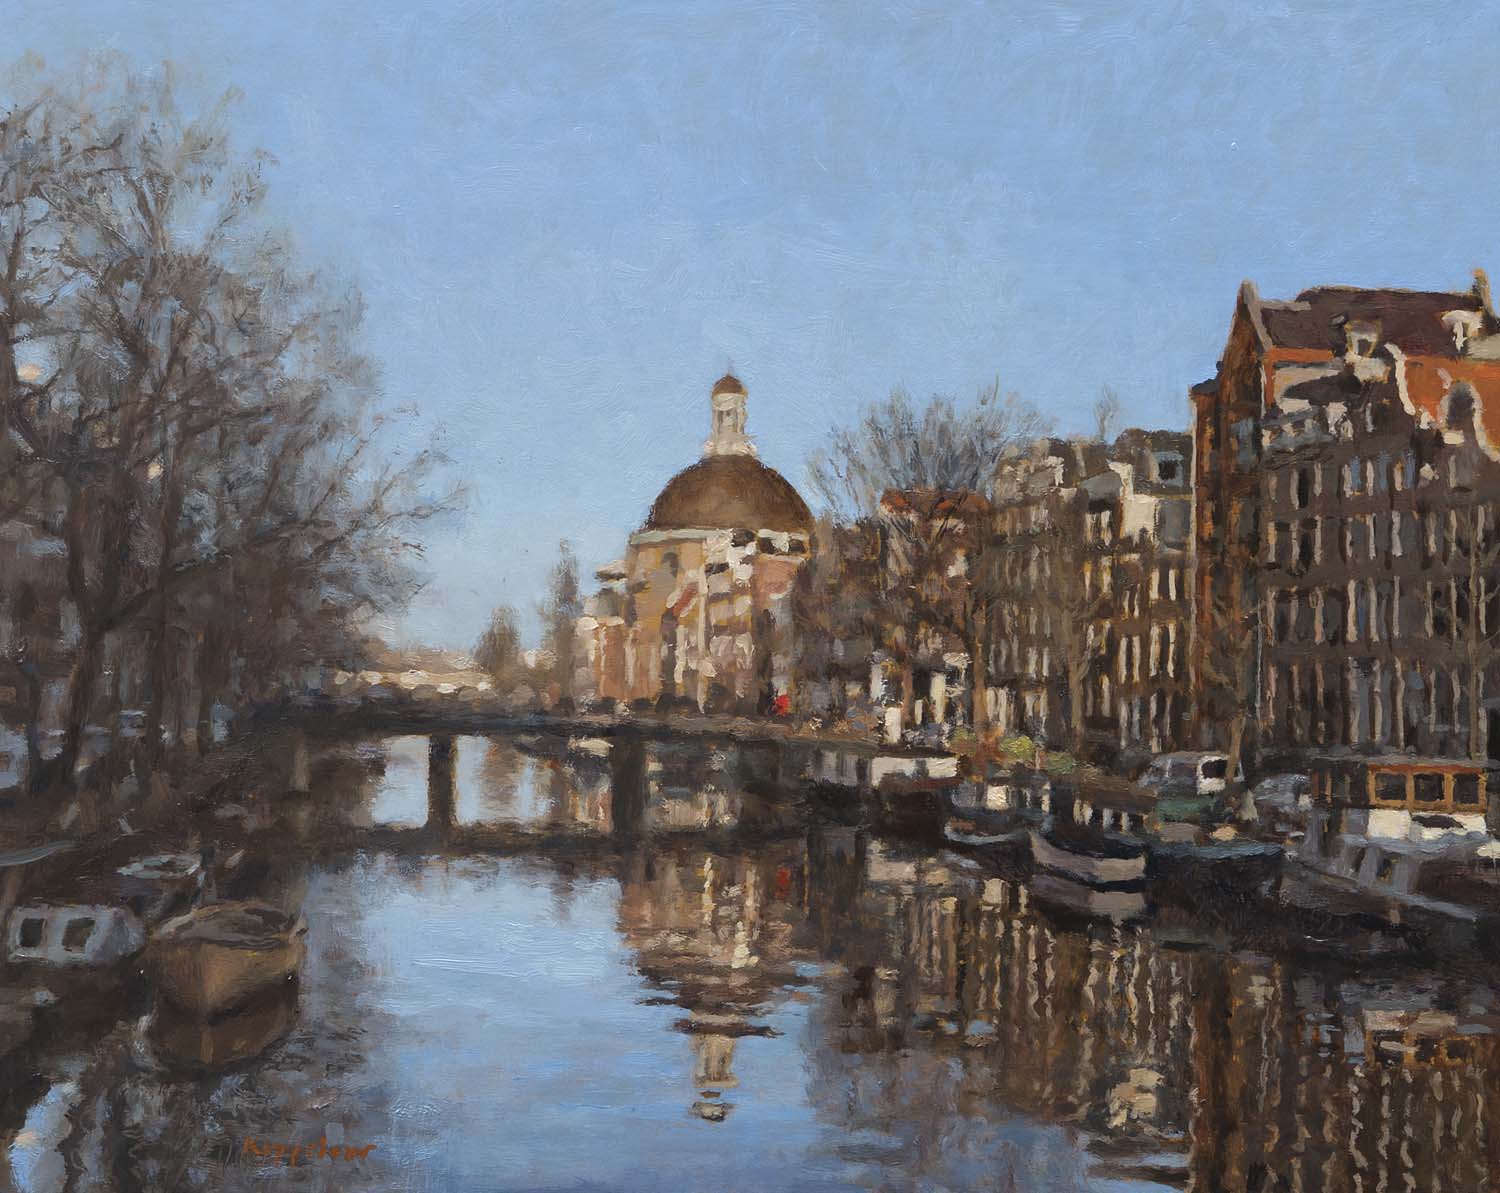 cityscape: 'Het Singel' oil on pannel by Dutch painter Frans Koppelaar.